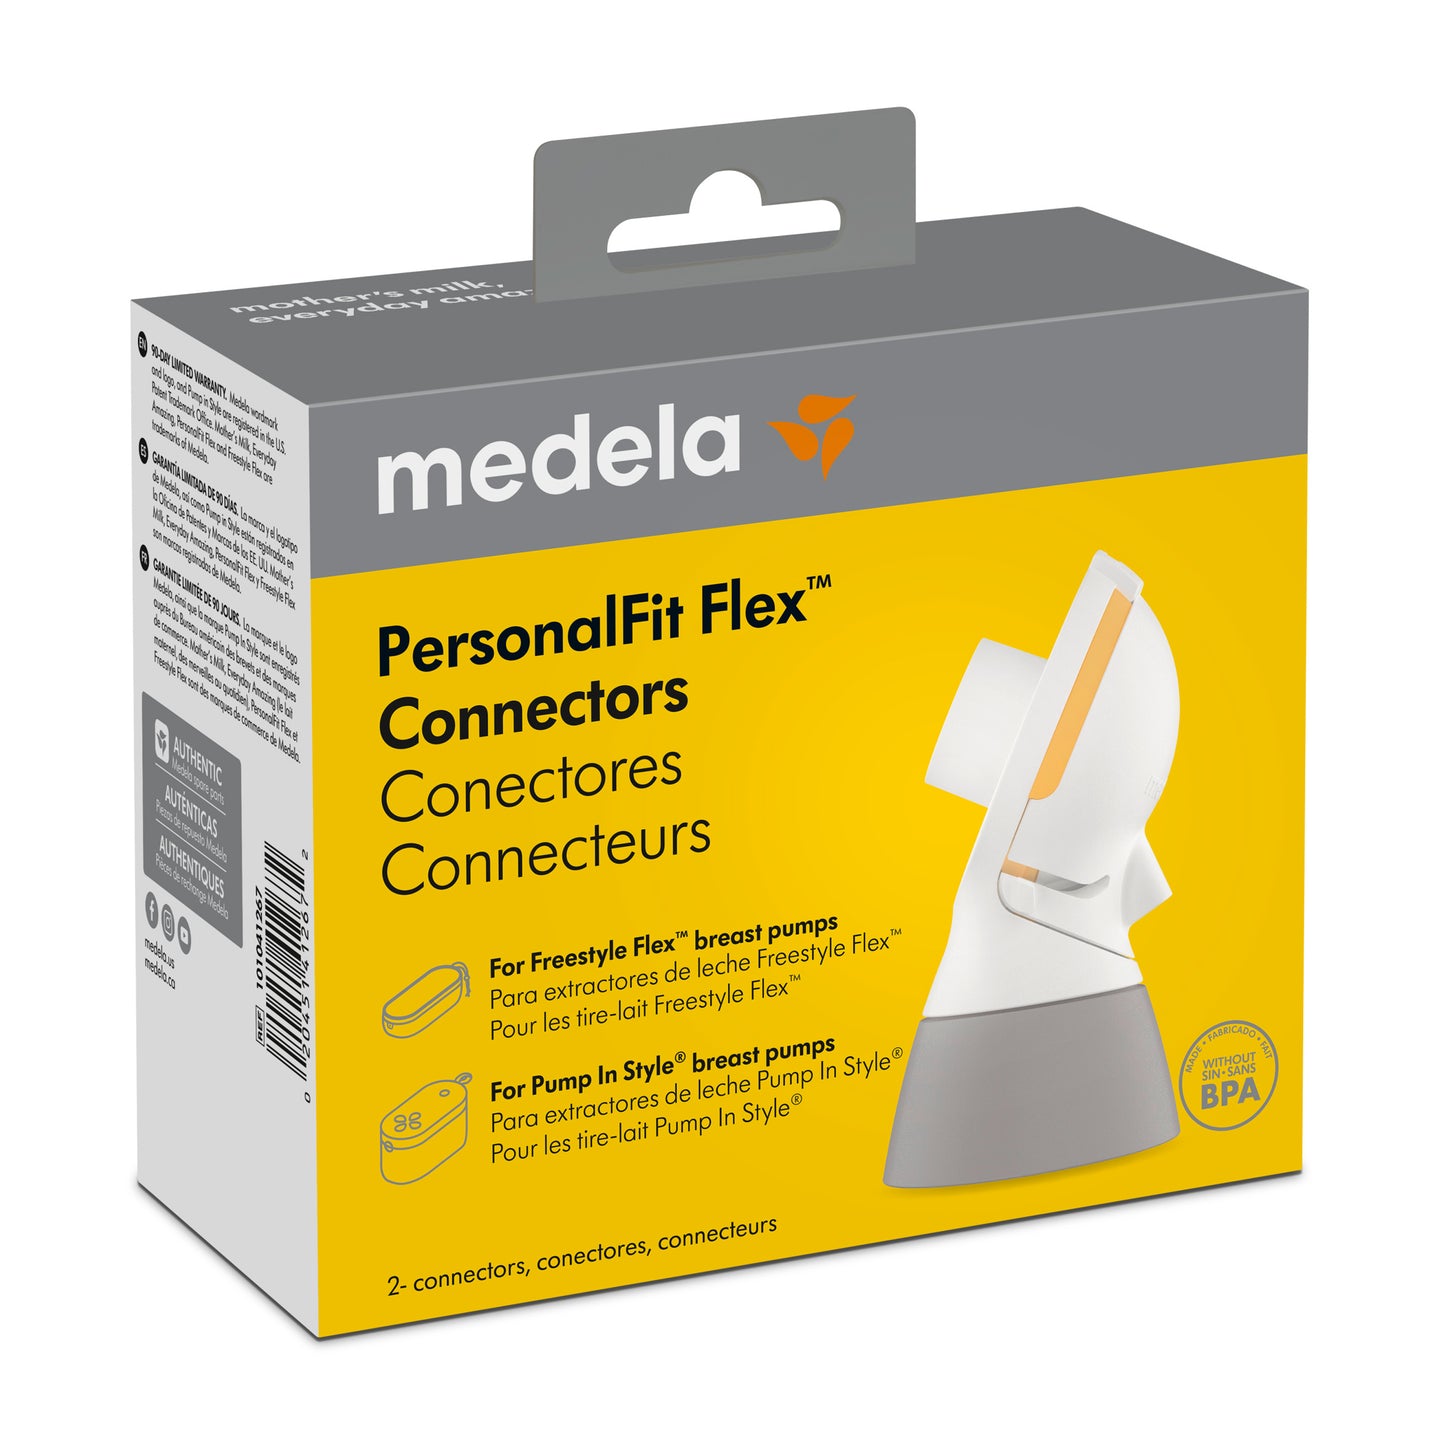 Medela PersonalFit Flex Connectors